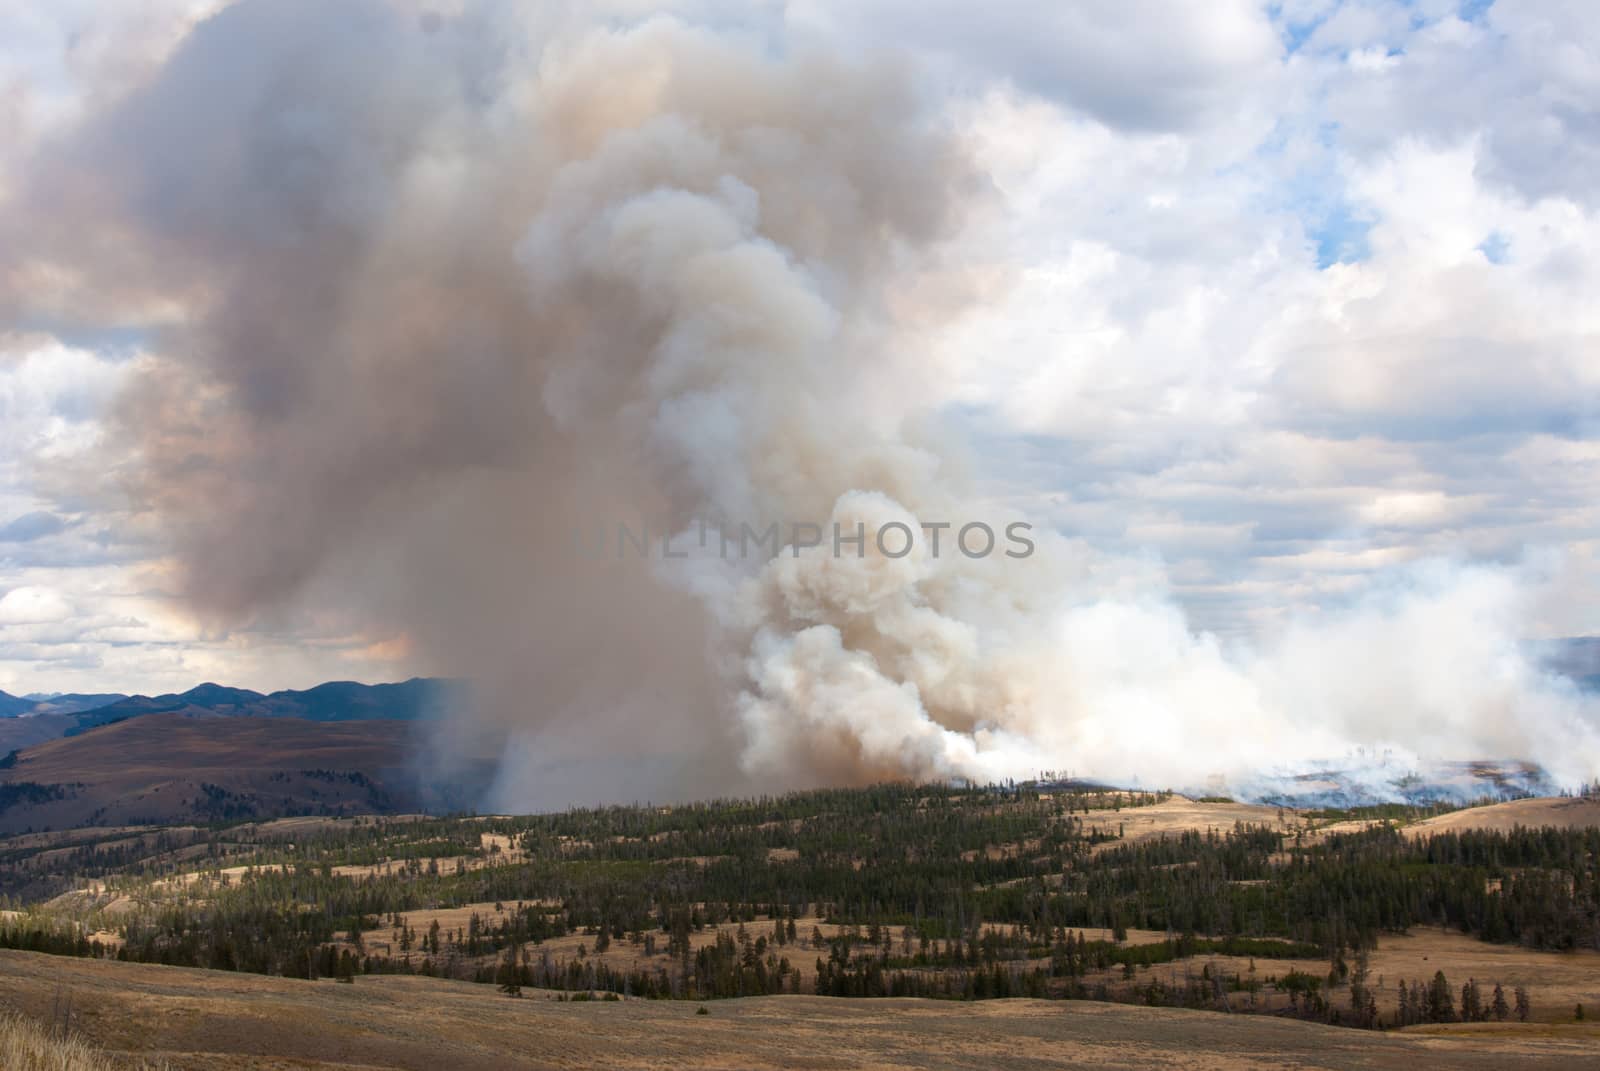 Hillside ablaze in Yellowstone Park by emattil